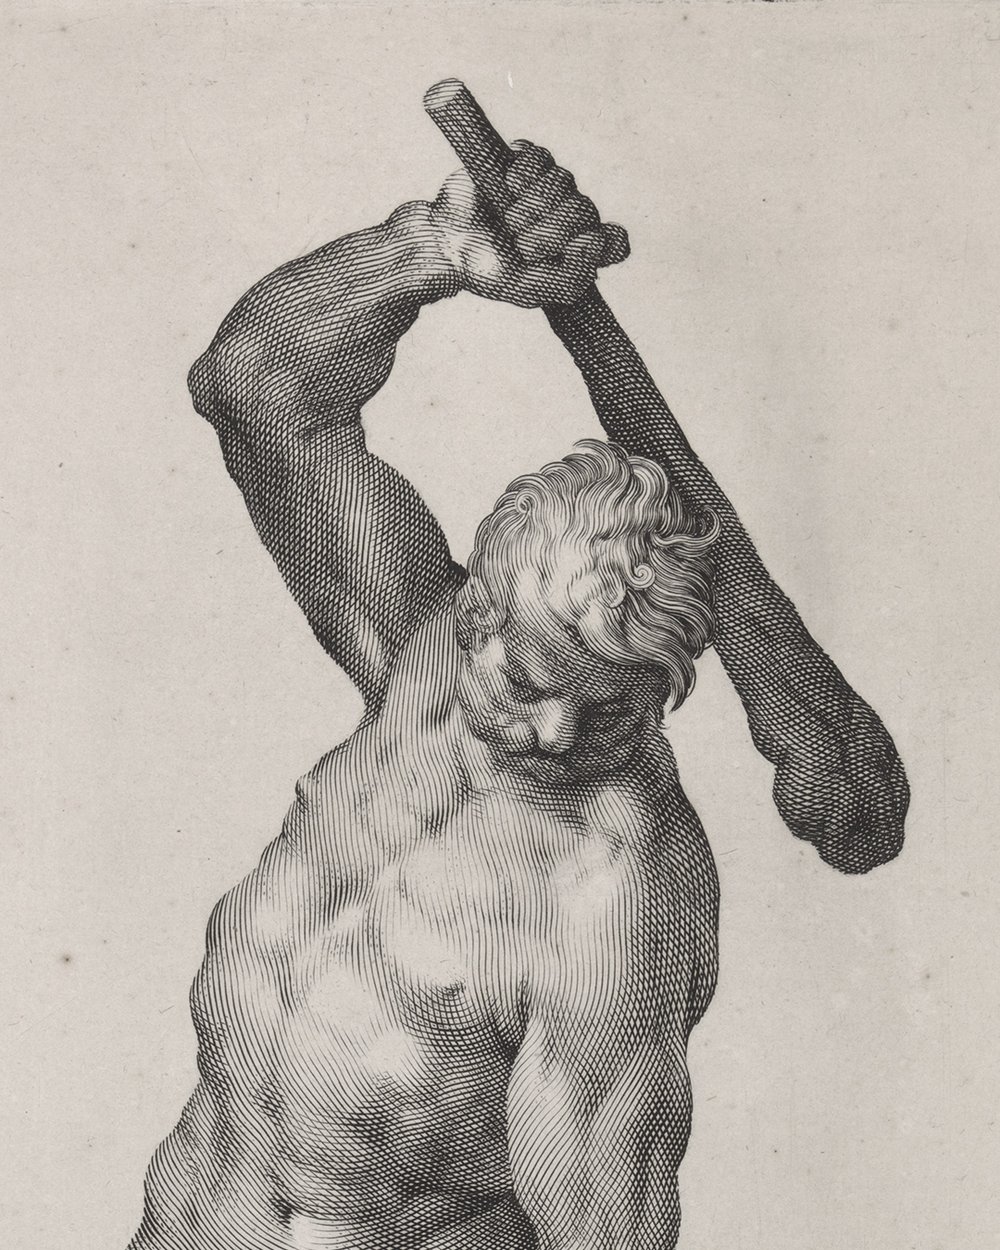 "Hercules kills the hydra of Lerna" (1633 - 1679)